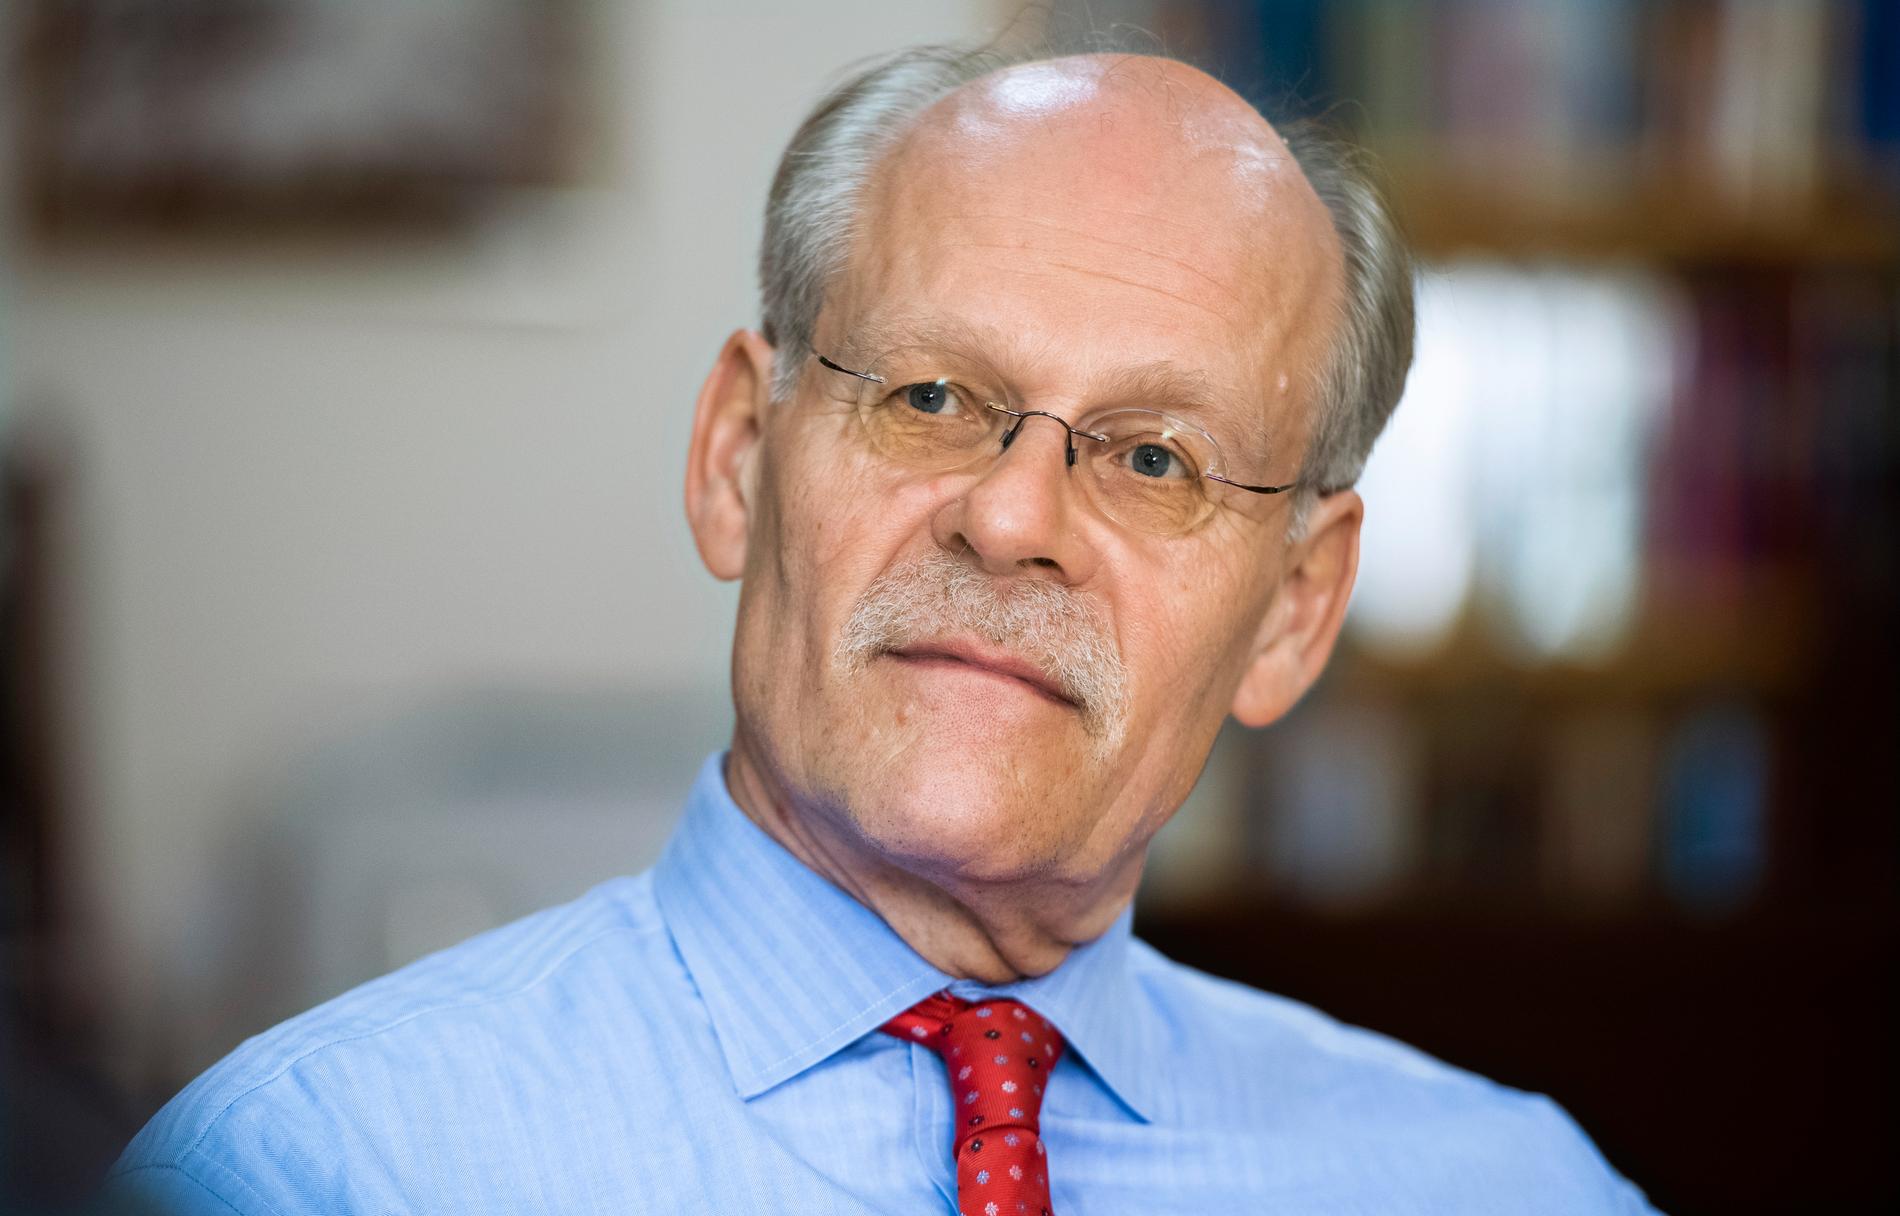 Riksbankschef Stefan Ingves.